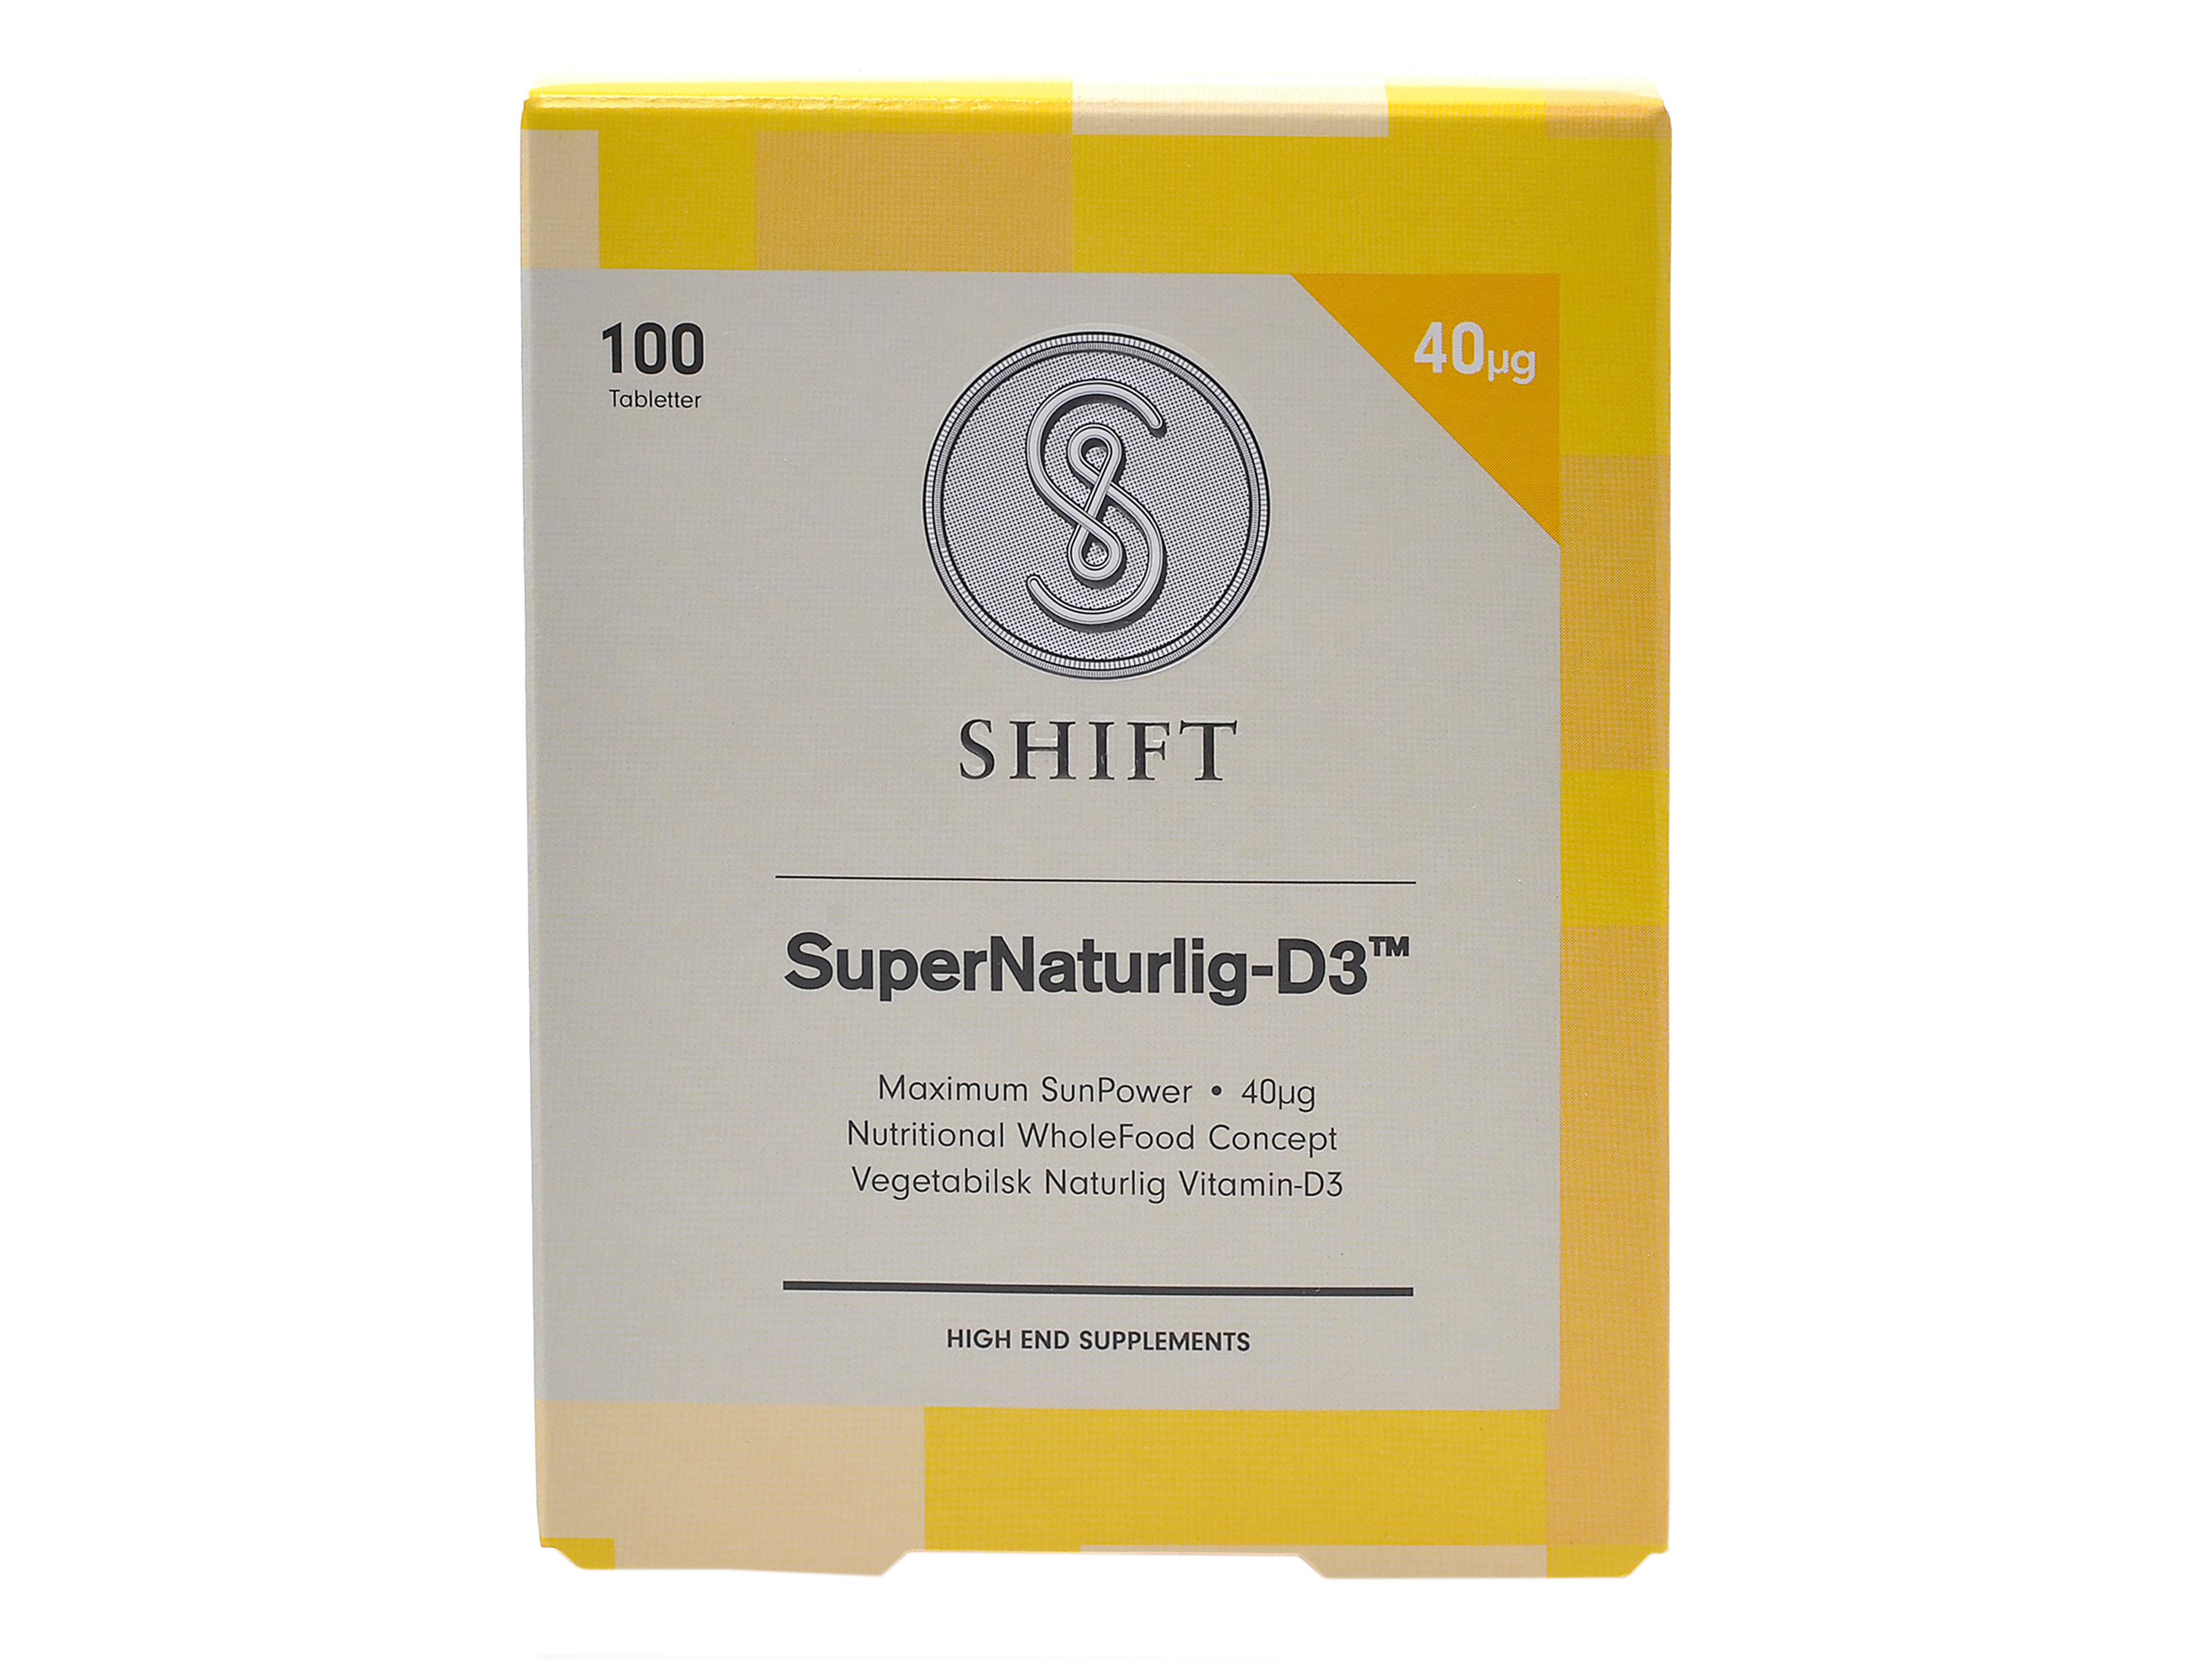 SHIFT SuperNaturlig-D3 40 µg Tabletter, 100 stk.